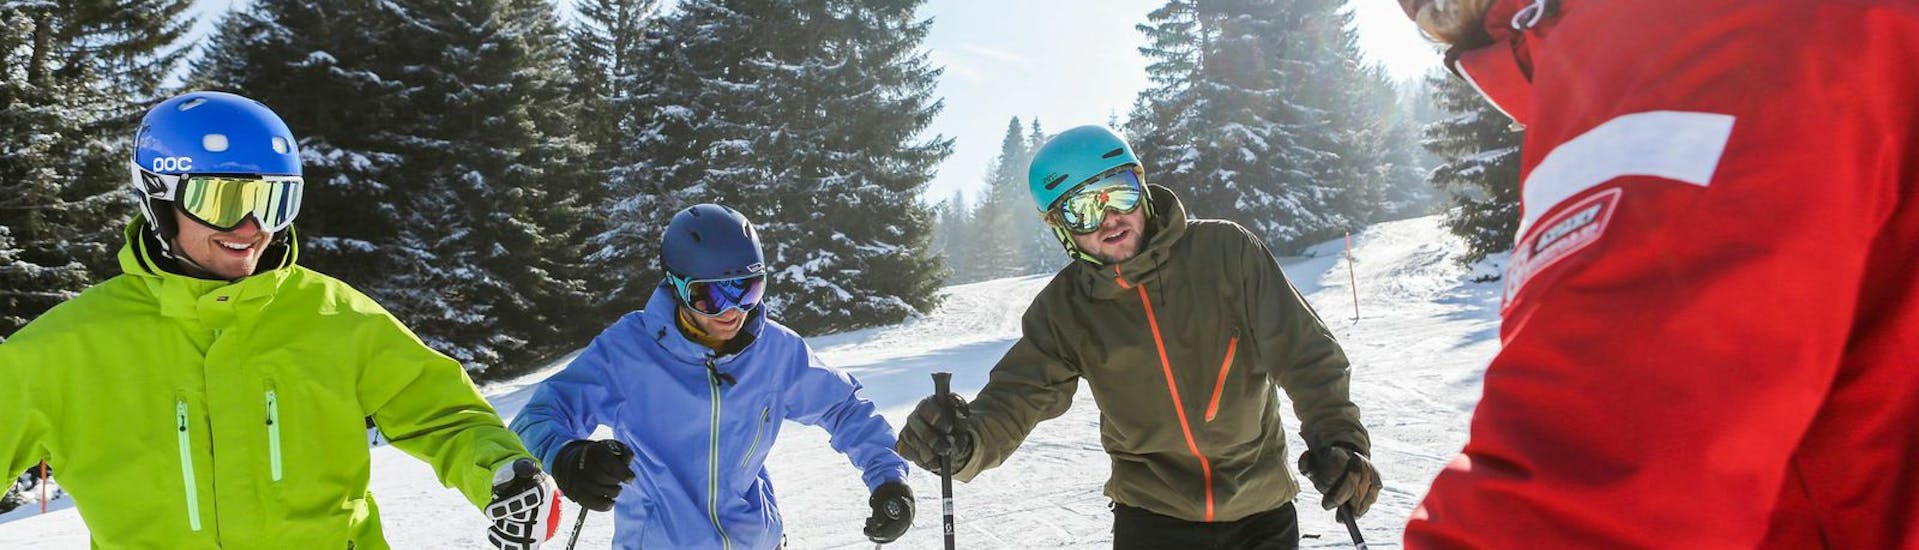 Skilehrer redet mit Kursteilnehmer während dem Skikurs für Erwachsene mit Erfahrung mit Skischule Nova.